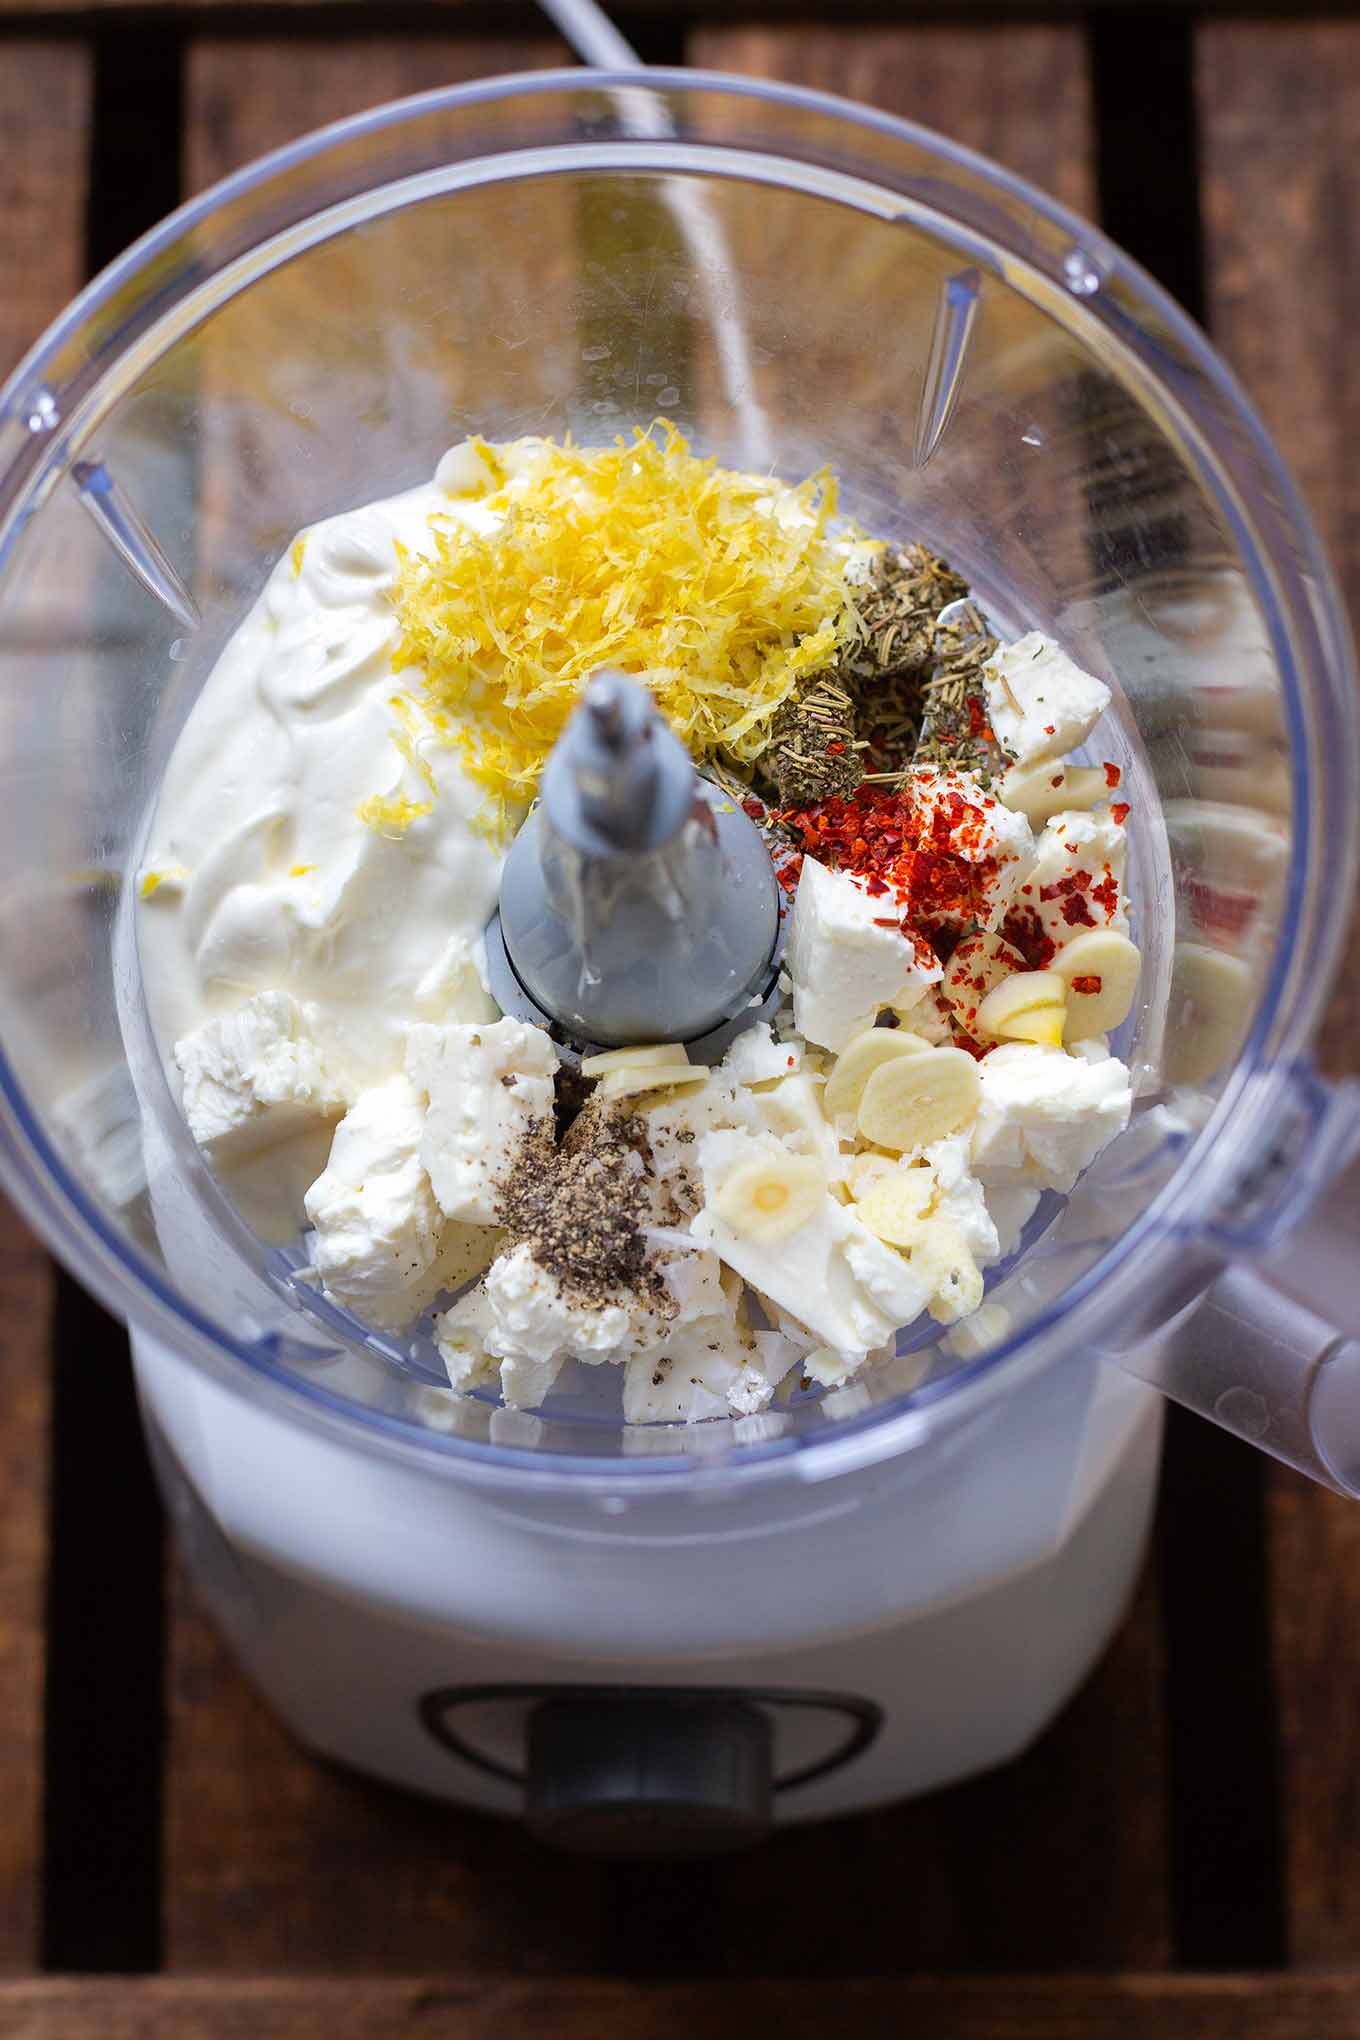 Griechischer Joghurt-Feta-Dip mit Zitrone. Dieses ultra cremige 10-Minuten Rezept ist perfekt für Grillen & Parties und kommt immer gut an, das müsst ihr probieren! - Kochkarussell.com #diprezept #grillen #schnellundeinfach #sommerrezept